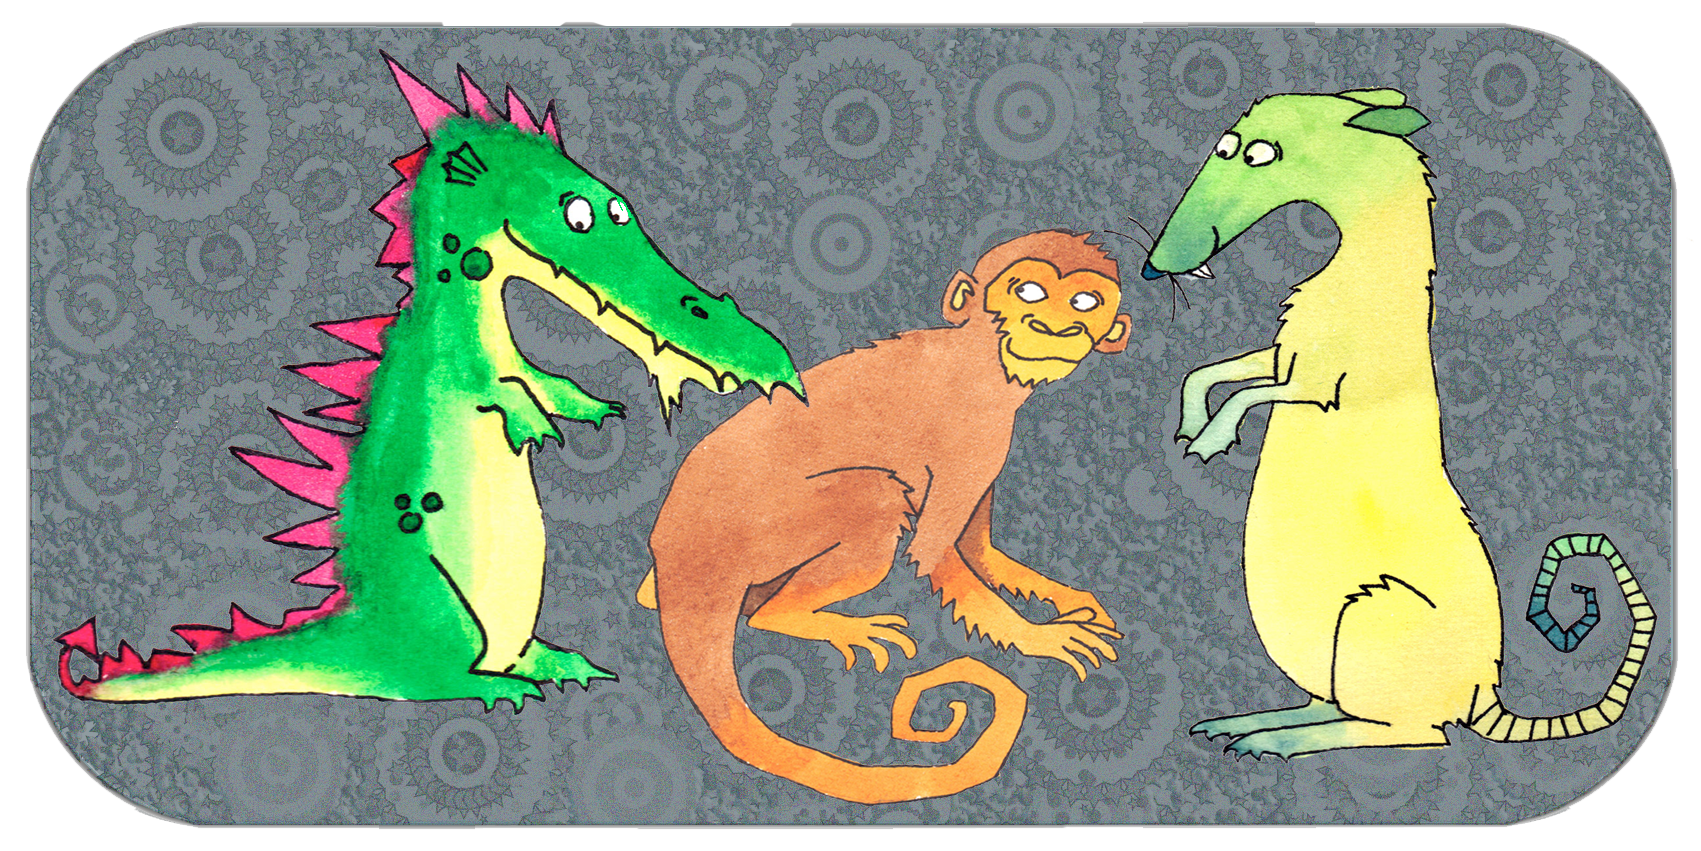 Neljä yhteensopivaa ryhmää | San He, kolme harmoniaa | Ryhmälohikäärme, apina, rotta